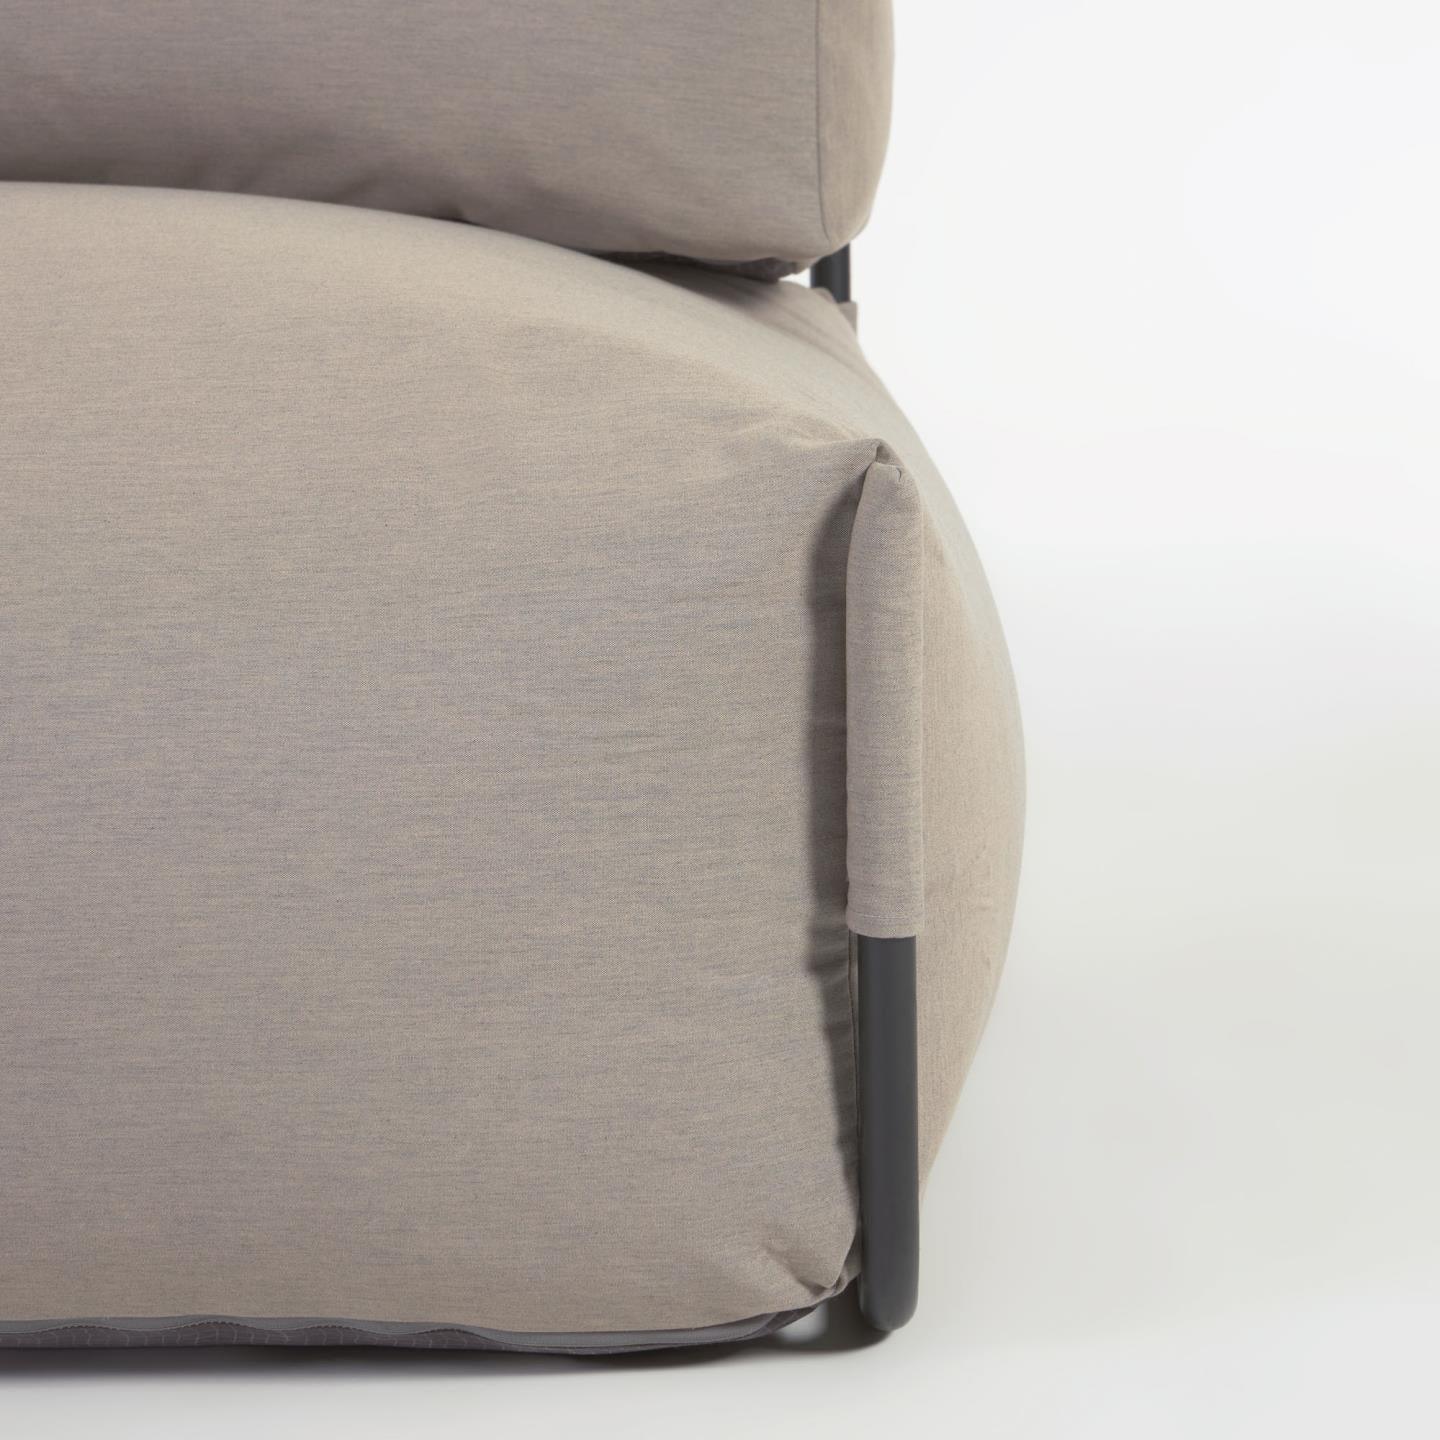 Sofa modułowa ogrodowa SQUARE - fotel khaki La Forma    Eye on Design